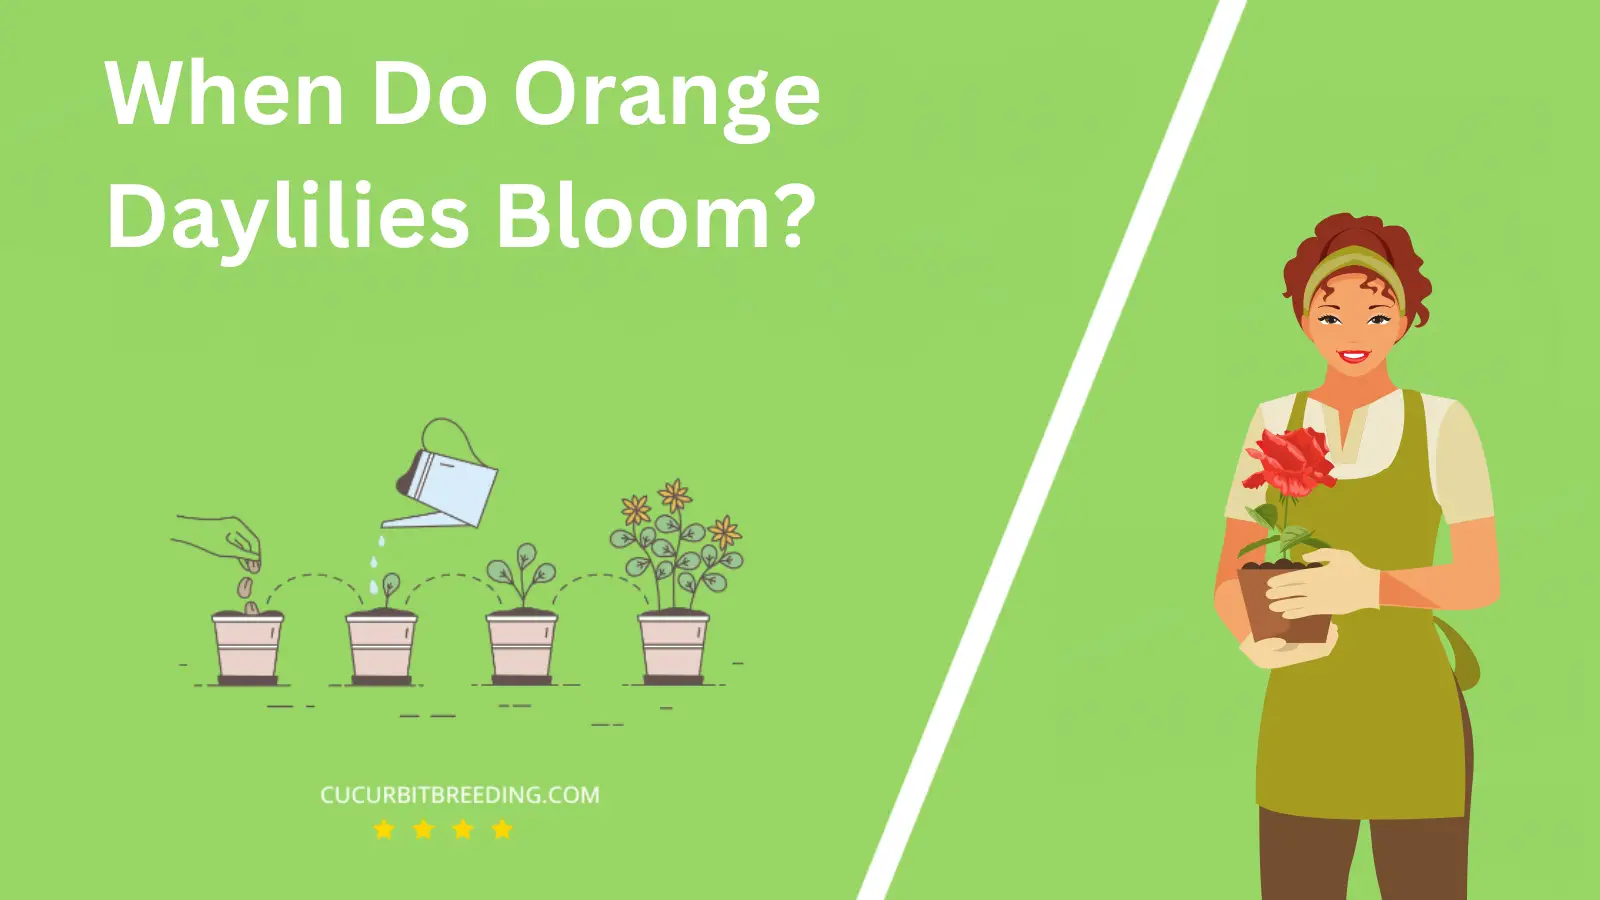 When Do Orange Daylilies Bloom?